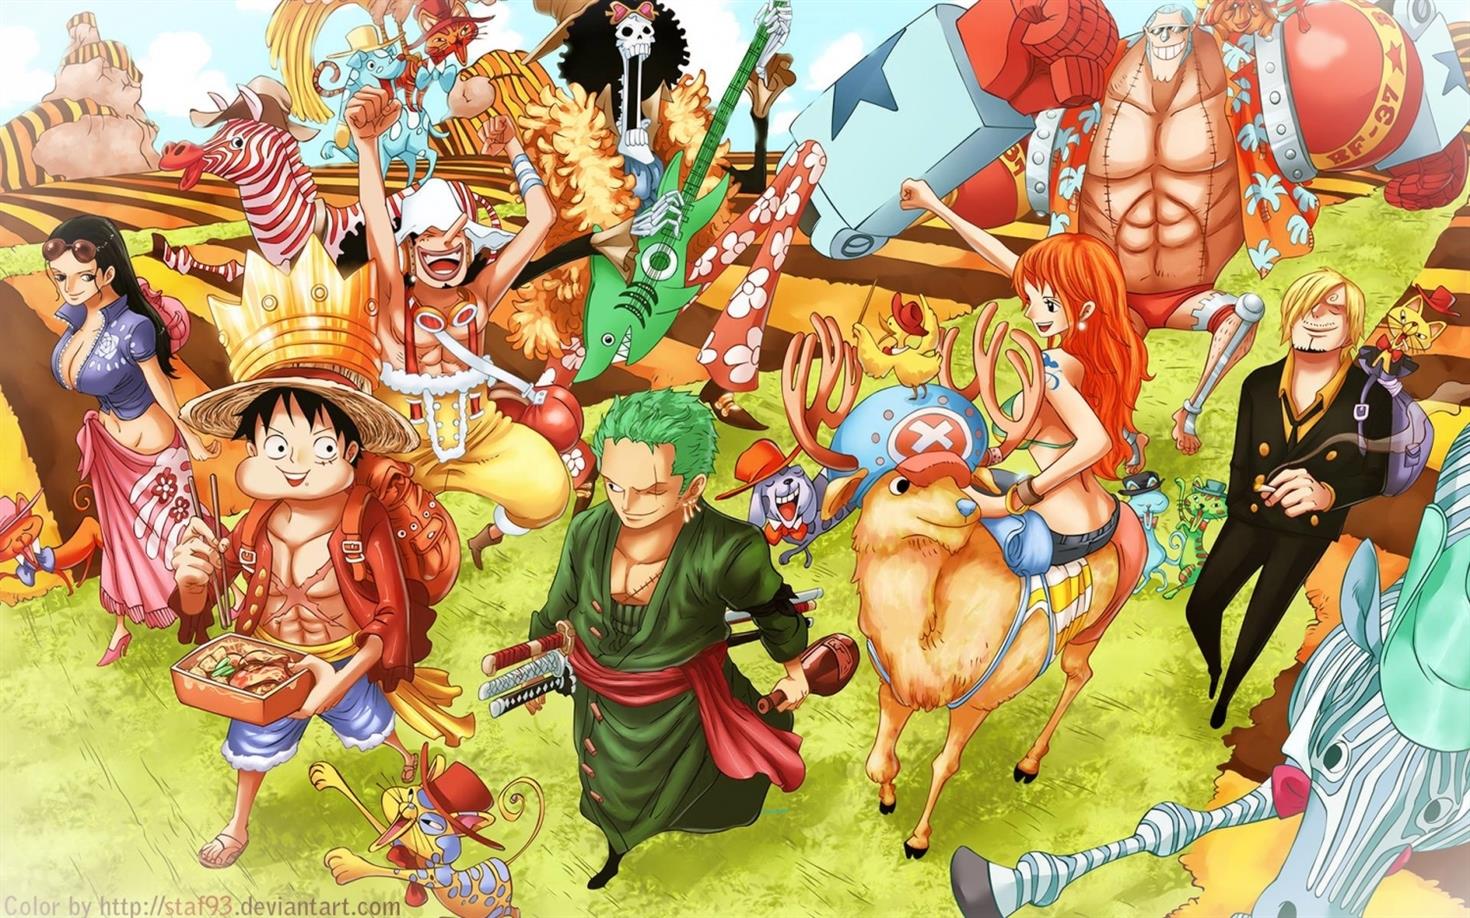 Date de sortie du chapitre 1011 de One Piece spoilers La finVOQODdl 1